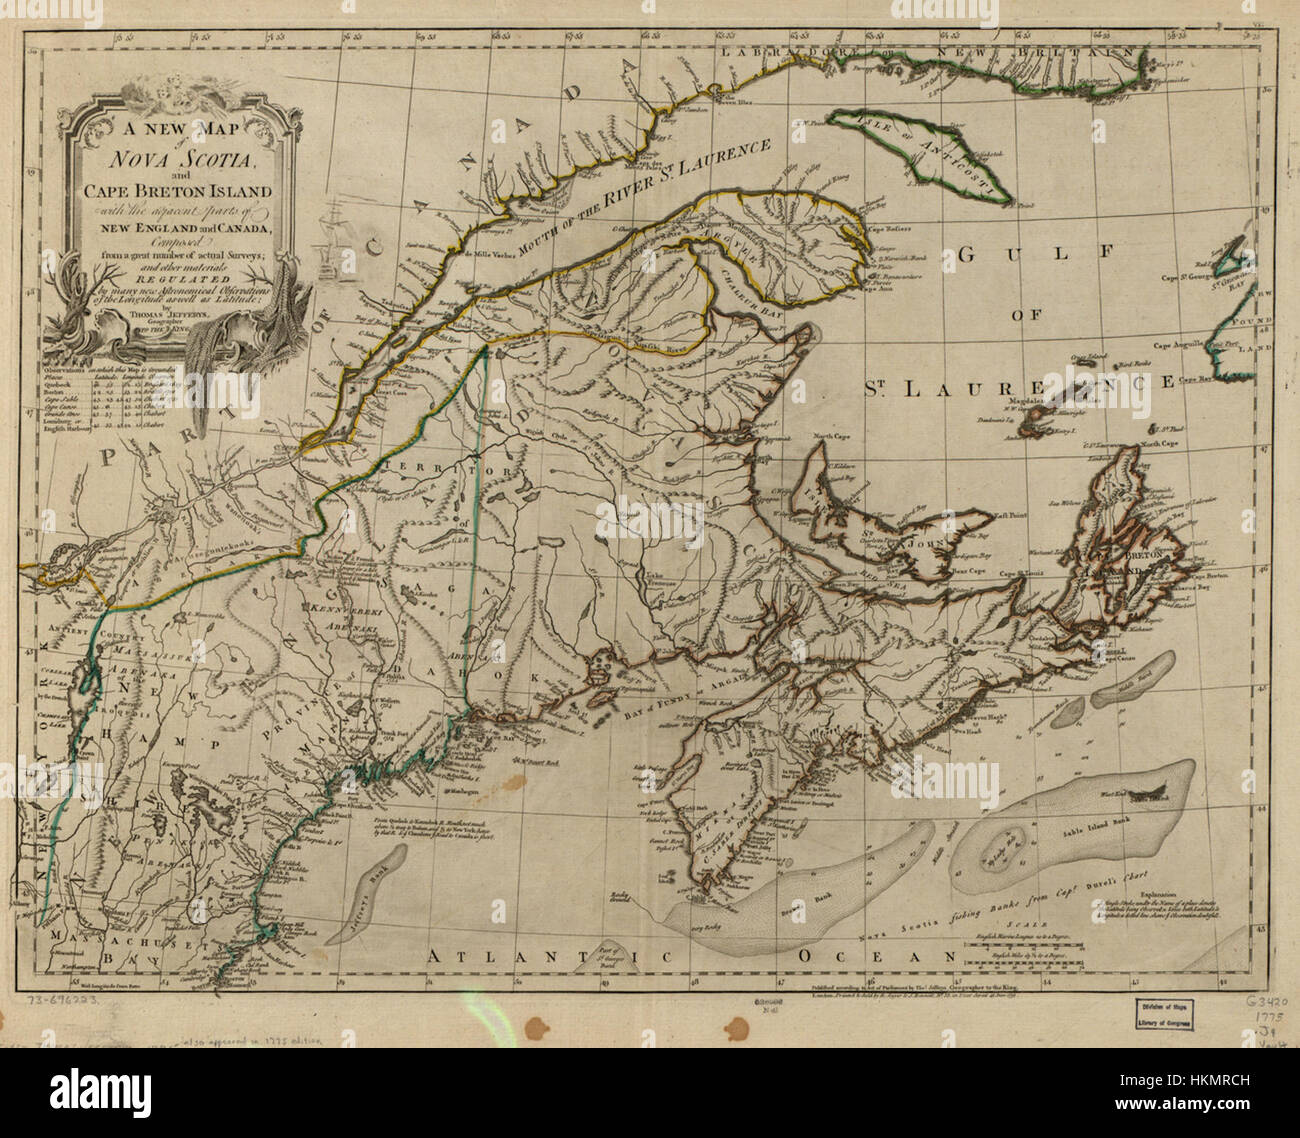 Une nouvelle carte de la Nouvelle-Écosse et l'île du Cap-Breton- avec les parties adjacentes de la Nouvelle Angleterre et le Canada, composé d'un grand nombre de sondages et d'autres matériaux réglementés par de nombreux nouveaux WDL24 Banque D'Images